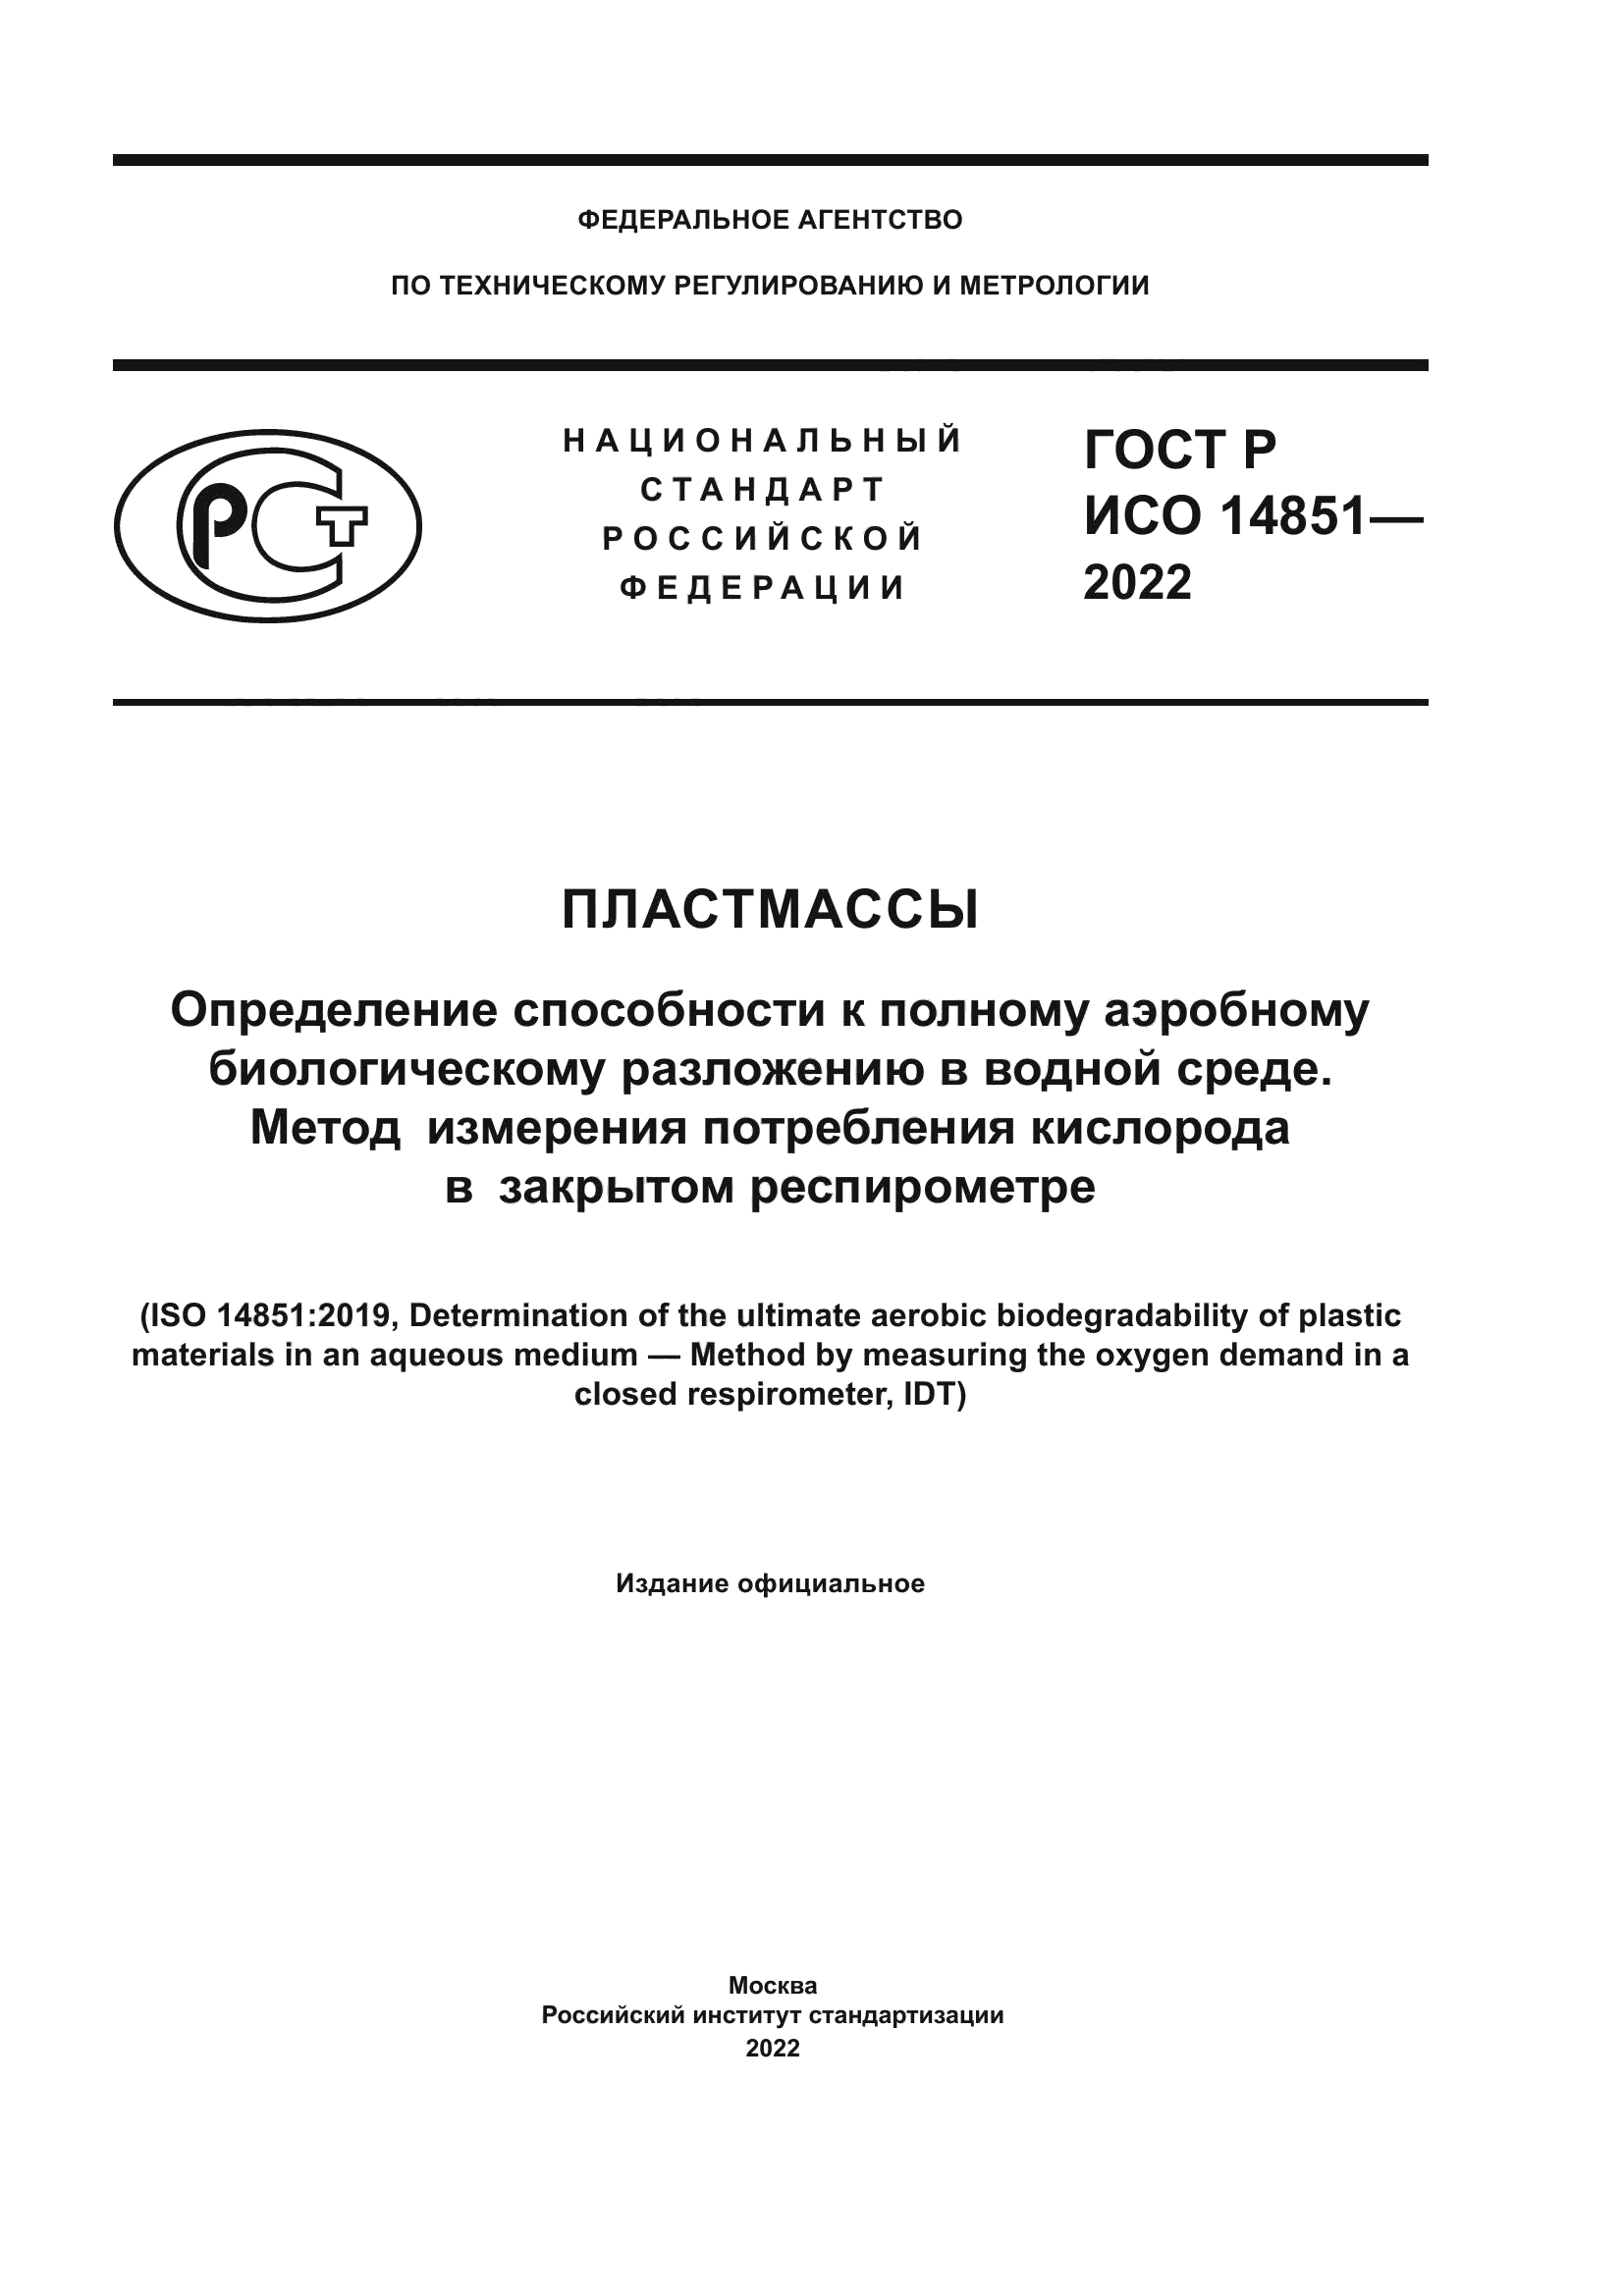 ГОСТ Р ИСО 14851-2022